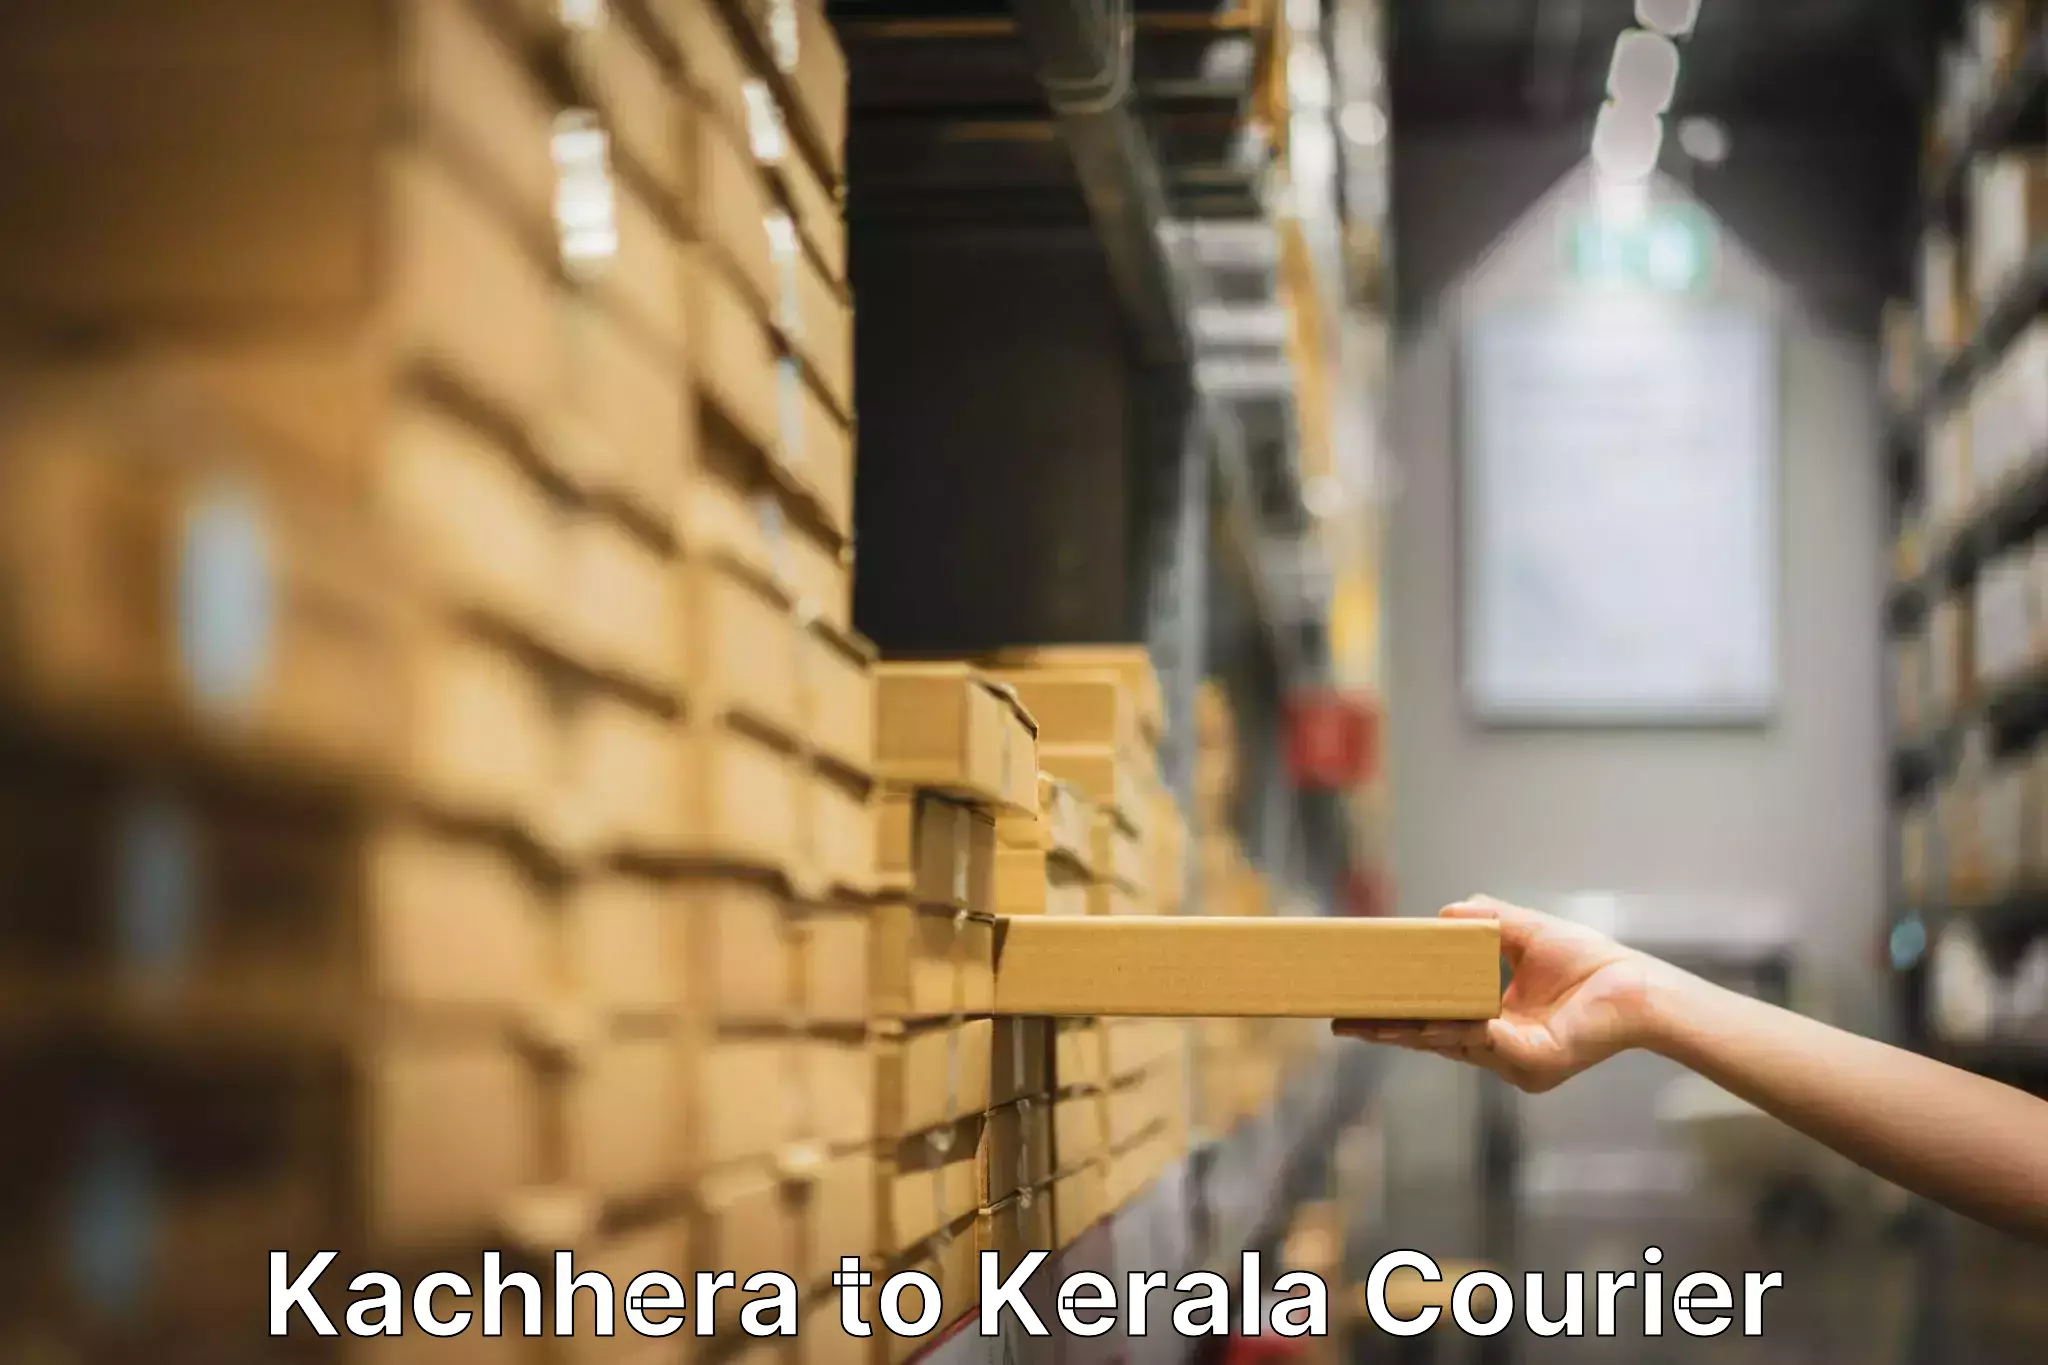 Hassle-free relocation Kachhera to Chungathara